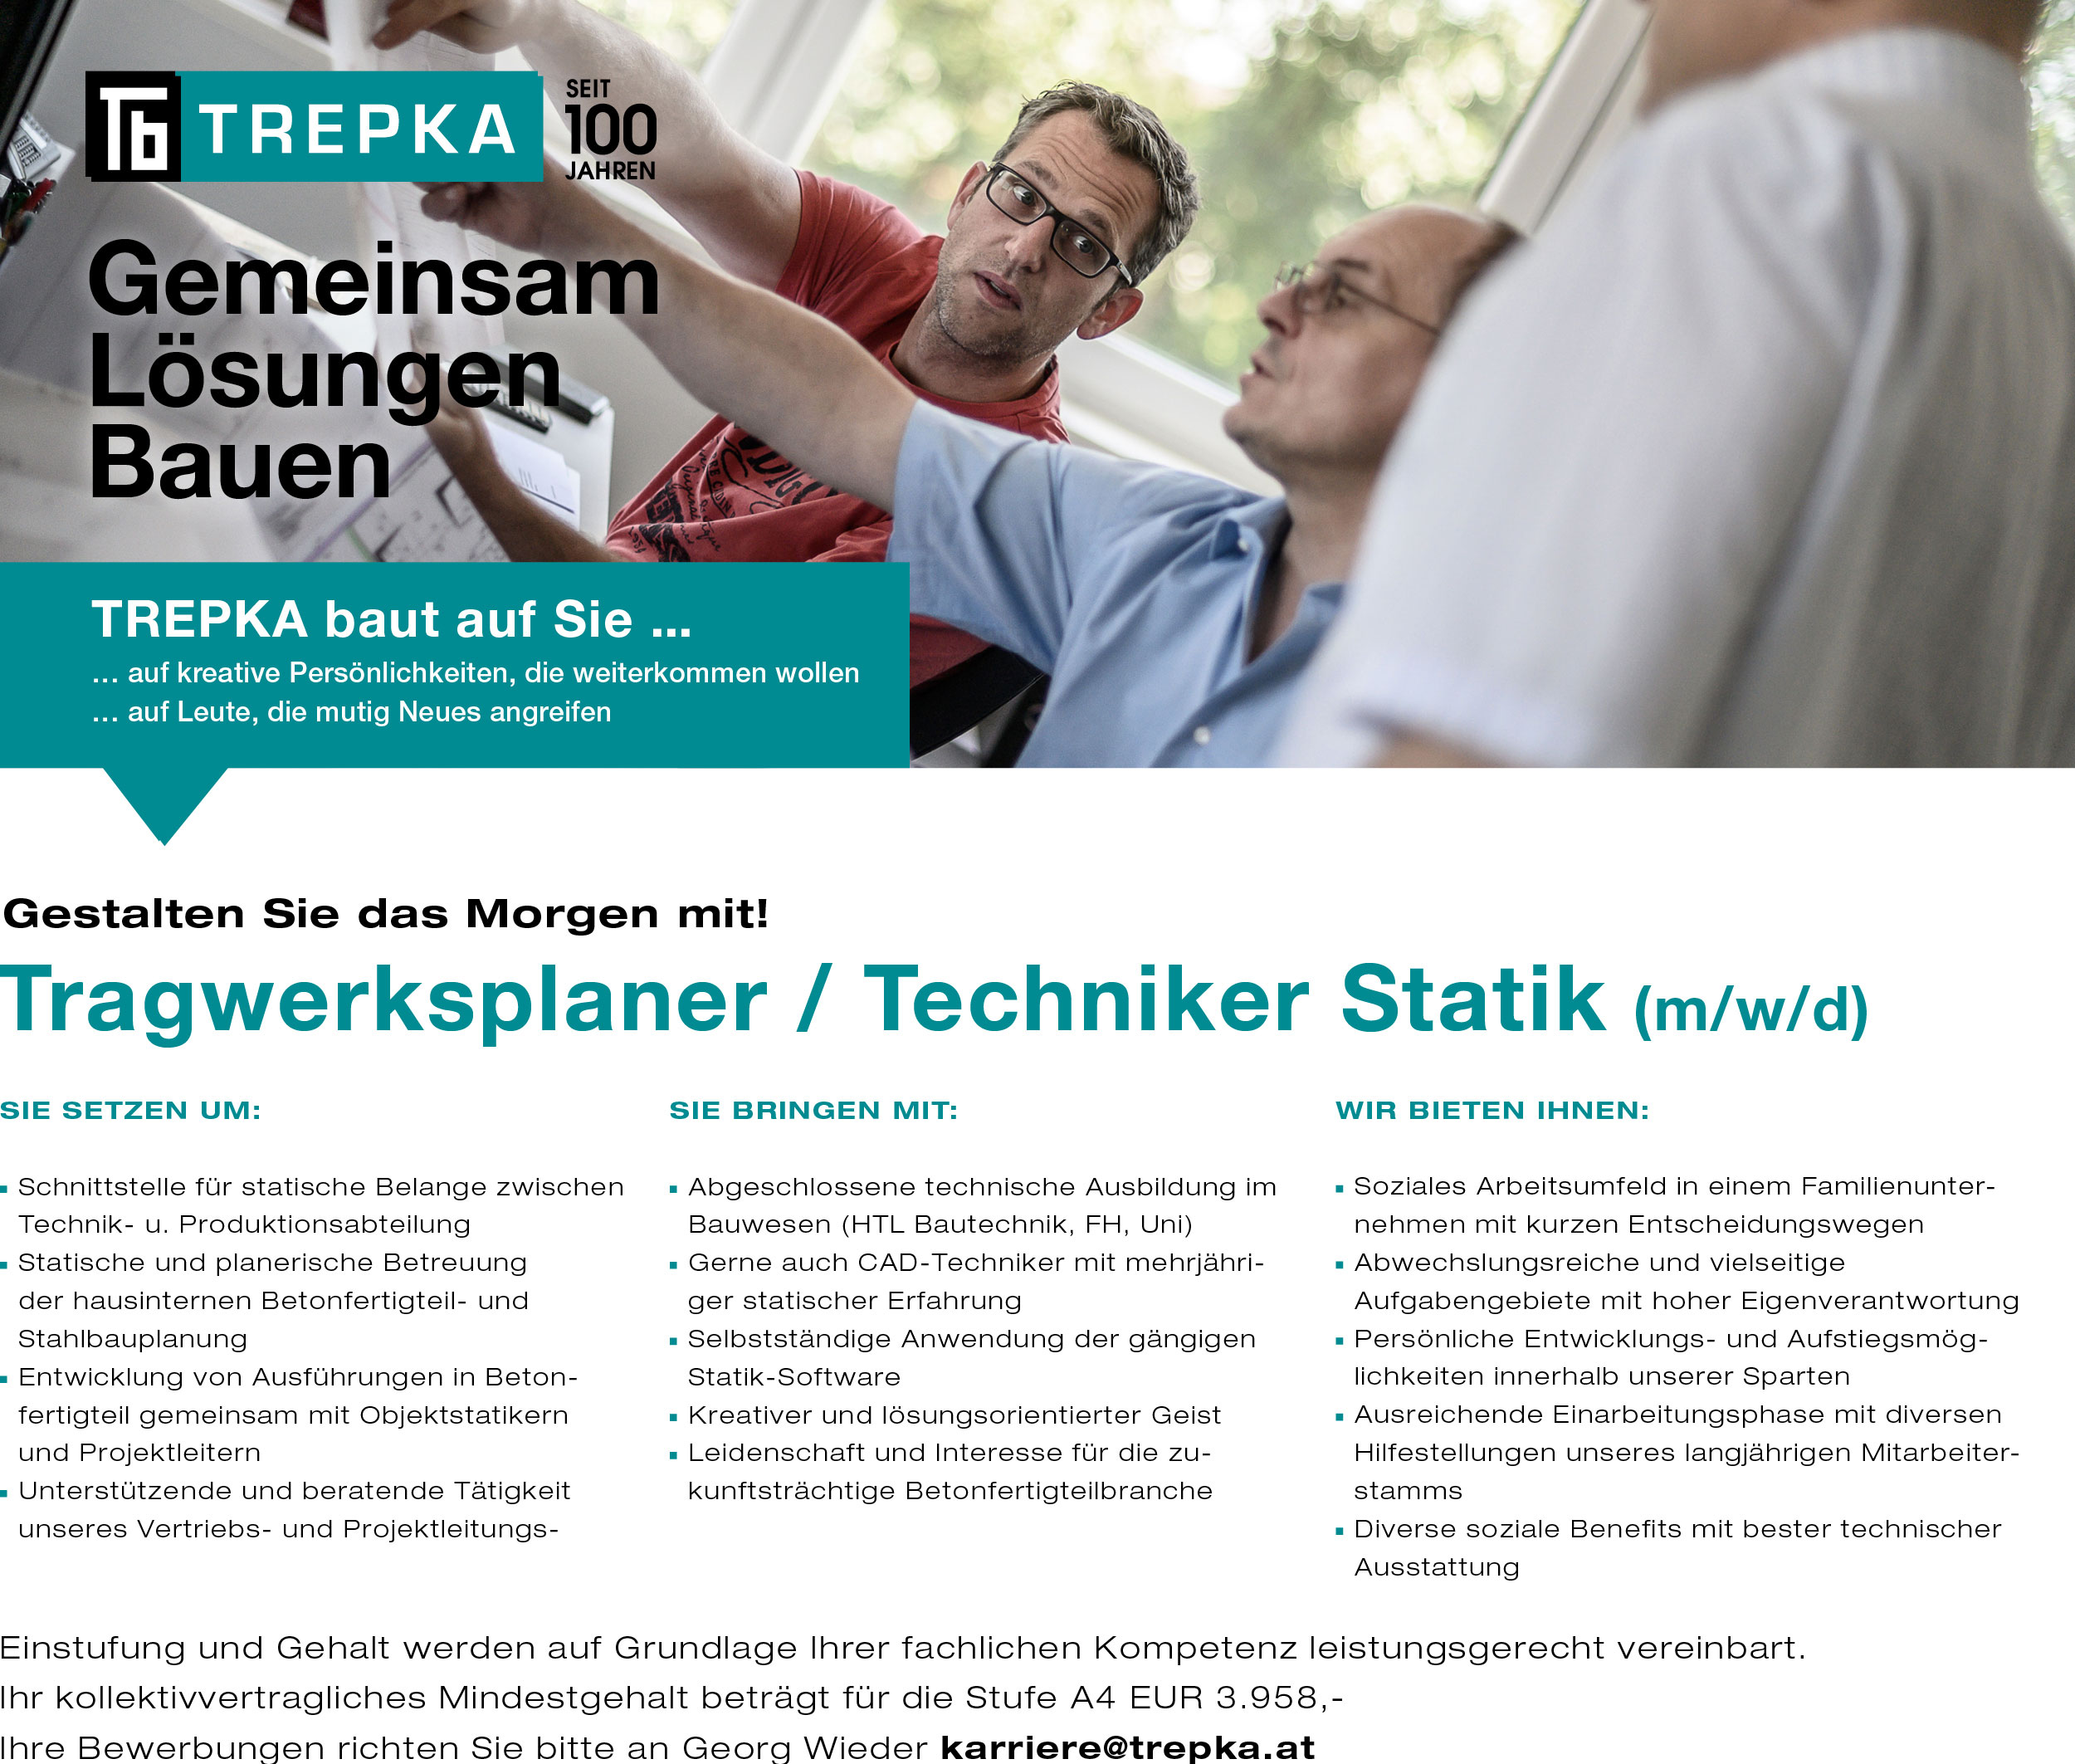 Trepka in Ober-Grafendorf sucht einen Tragwerksplaner bzw. einen Techniker für Statik (m/w/d)